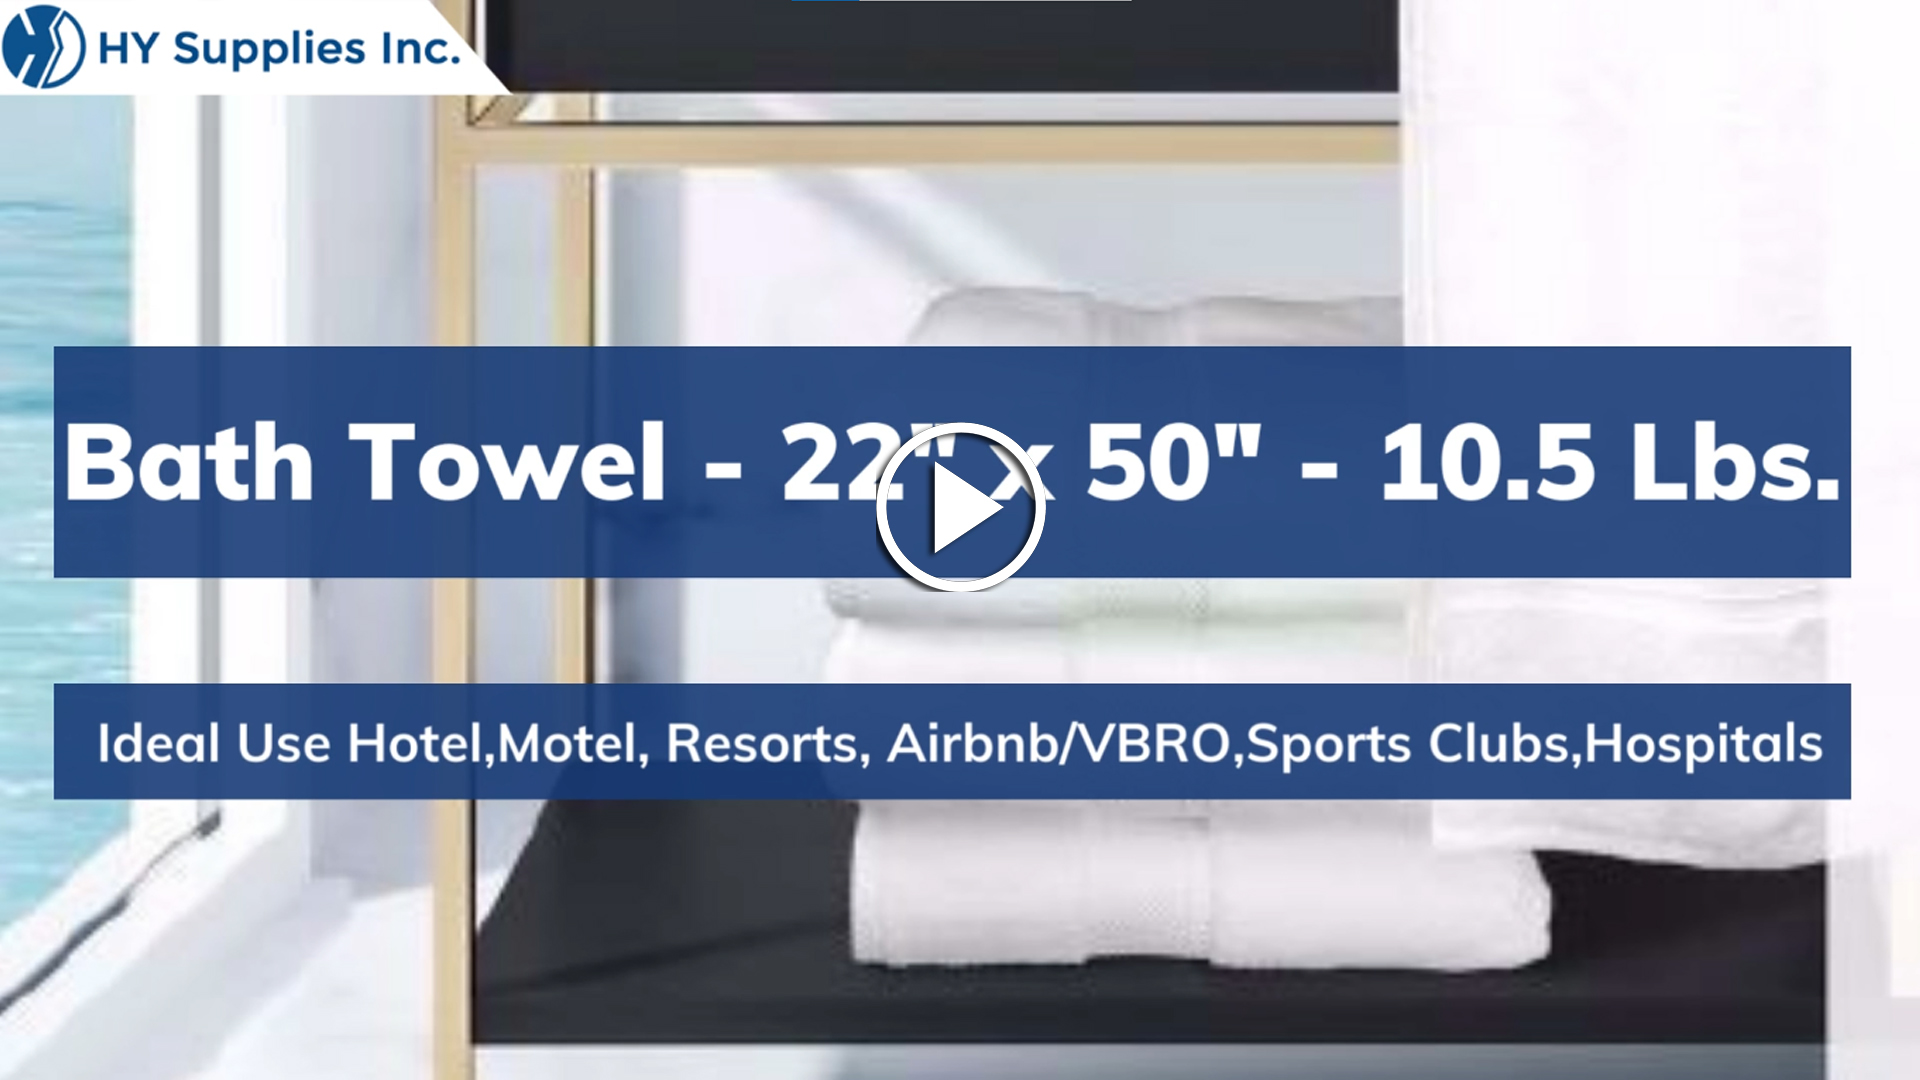 Bath Towel - 22" x 50" - 10.5 Lbs.